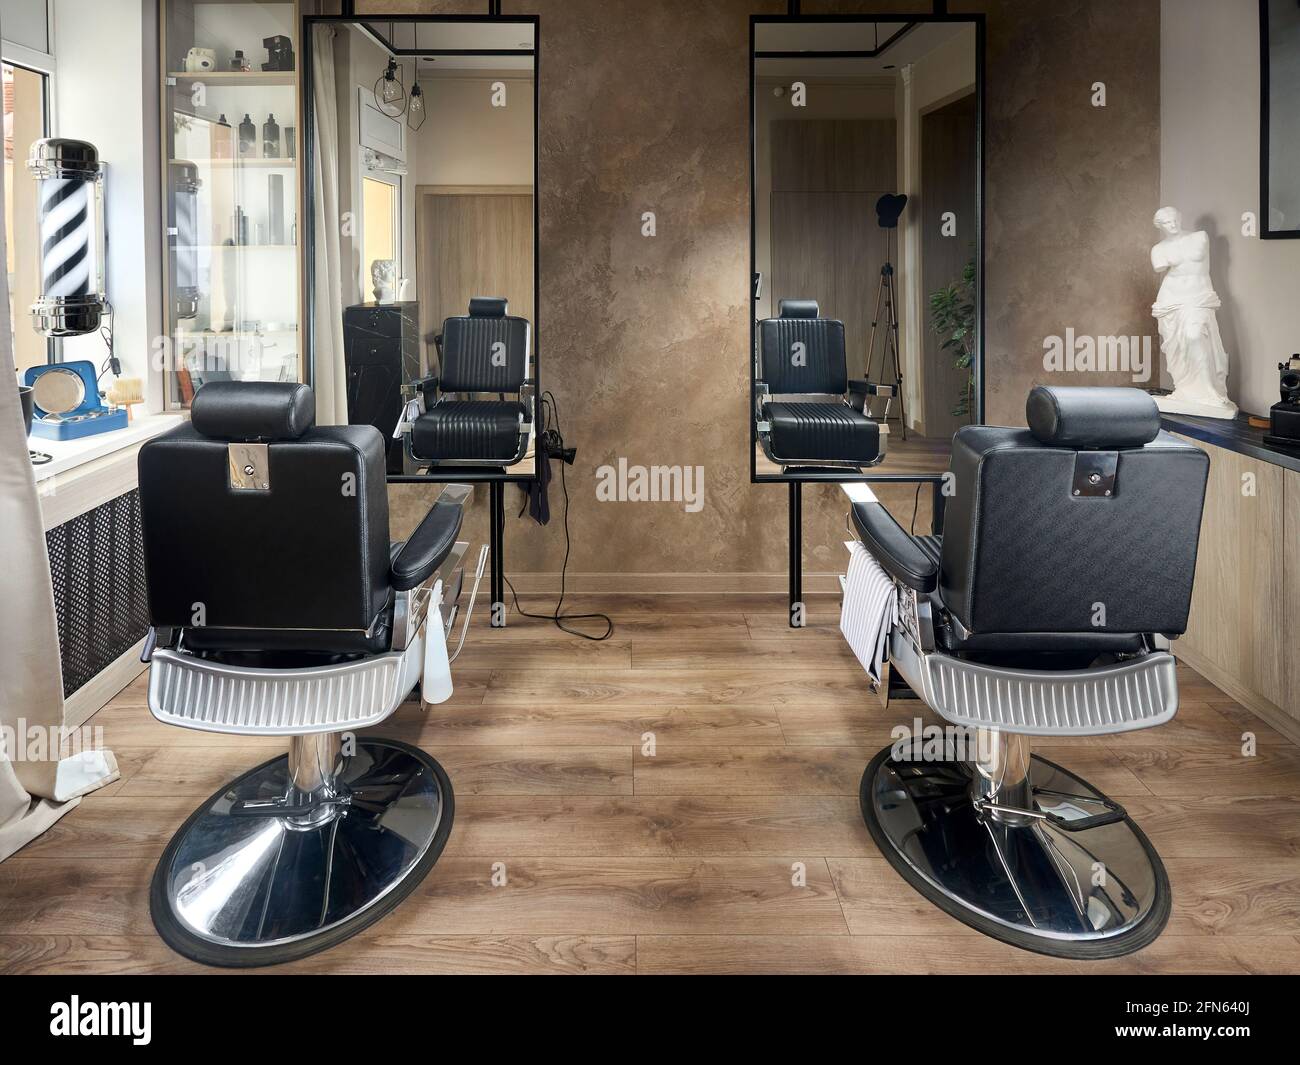 Peluquería o peluquería de caballeros diseño vintage peluquería vacío con  dos sillas y dos espejos estatua y accesorios Fotografía de stock - Alamy